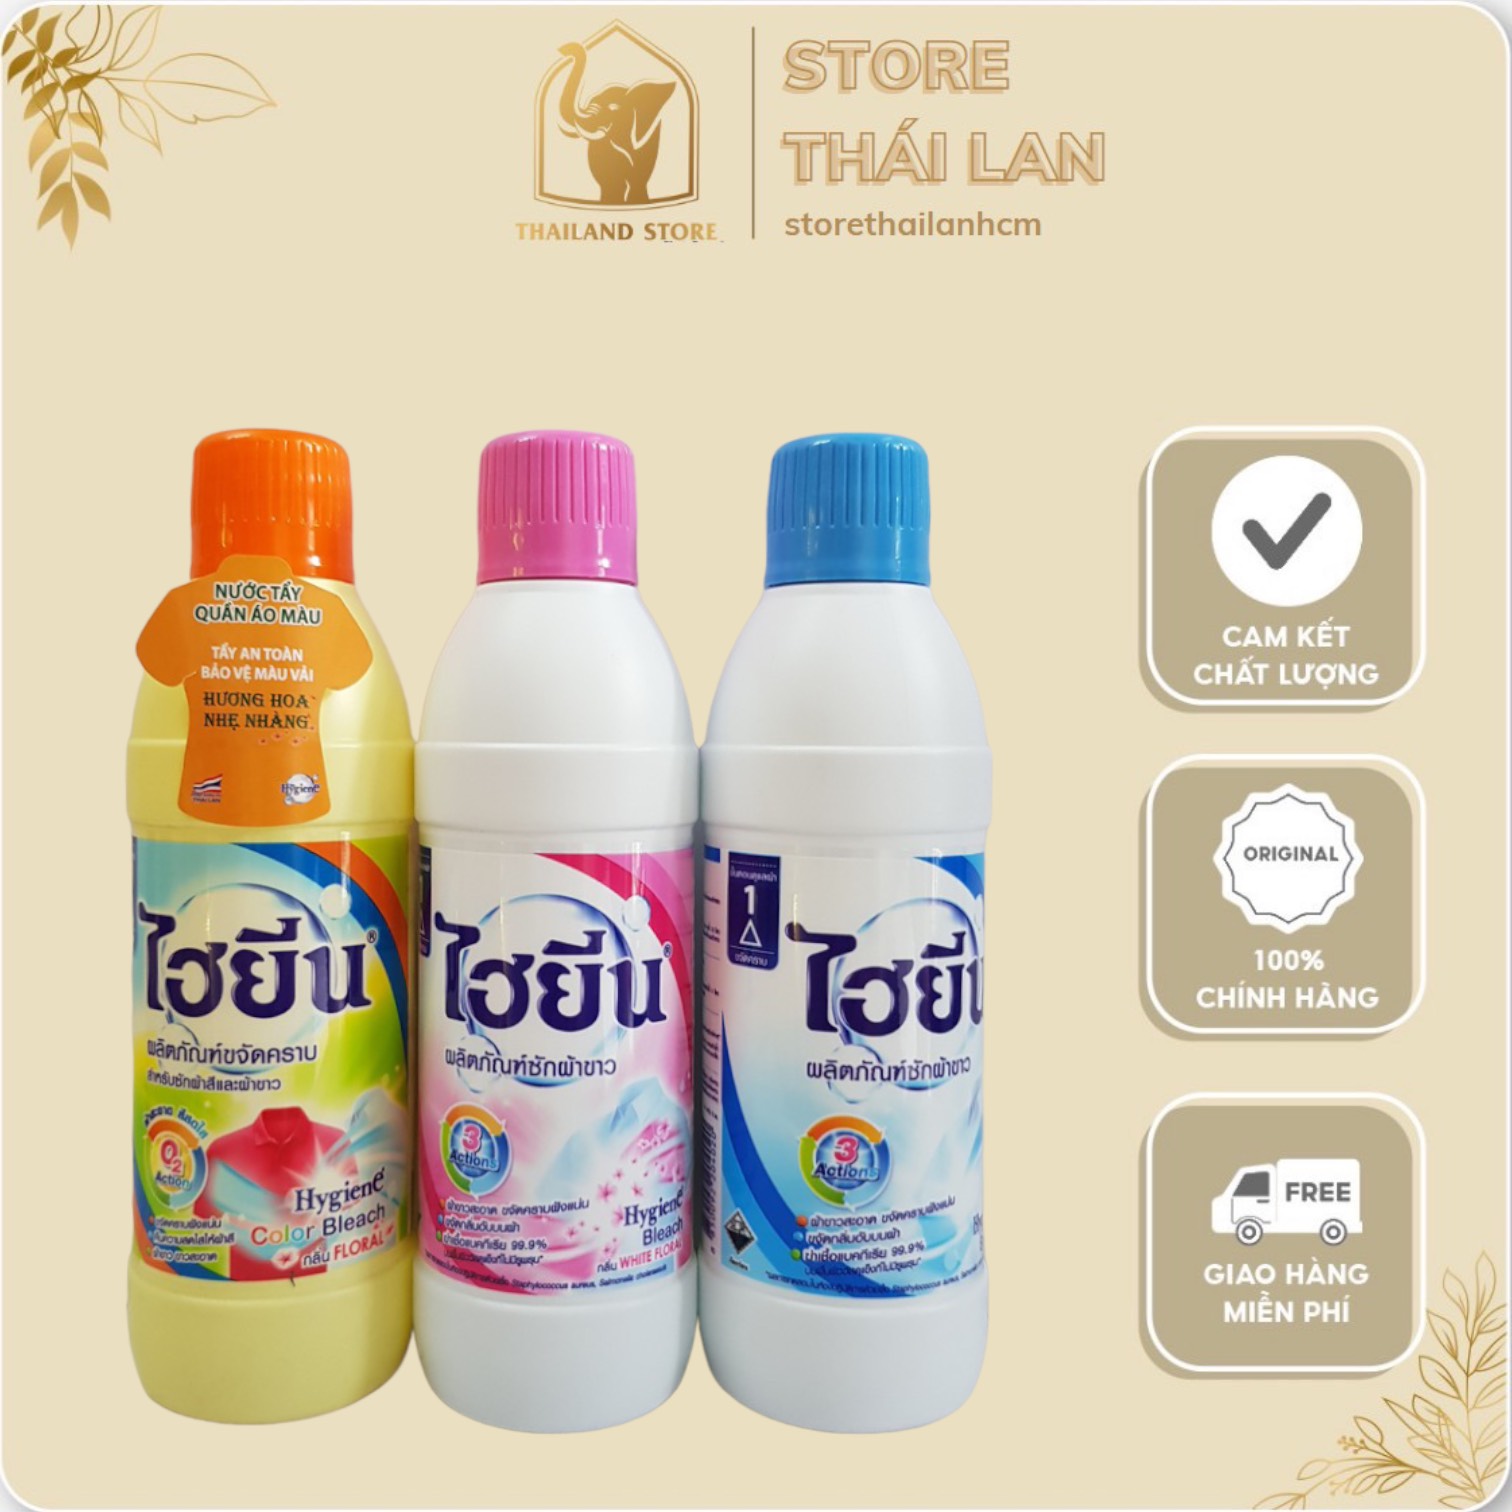 Nước tẩy quần áo DÀNH CHO QUẦN ÁO TRẮNG Hygiene THAILAND